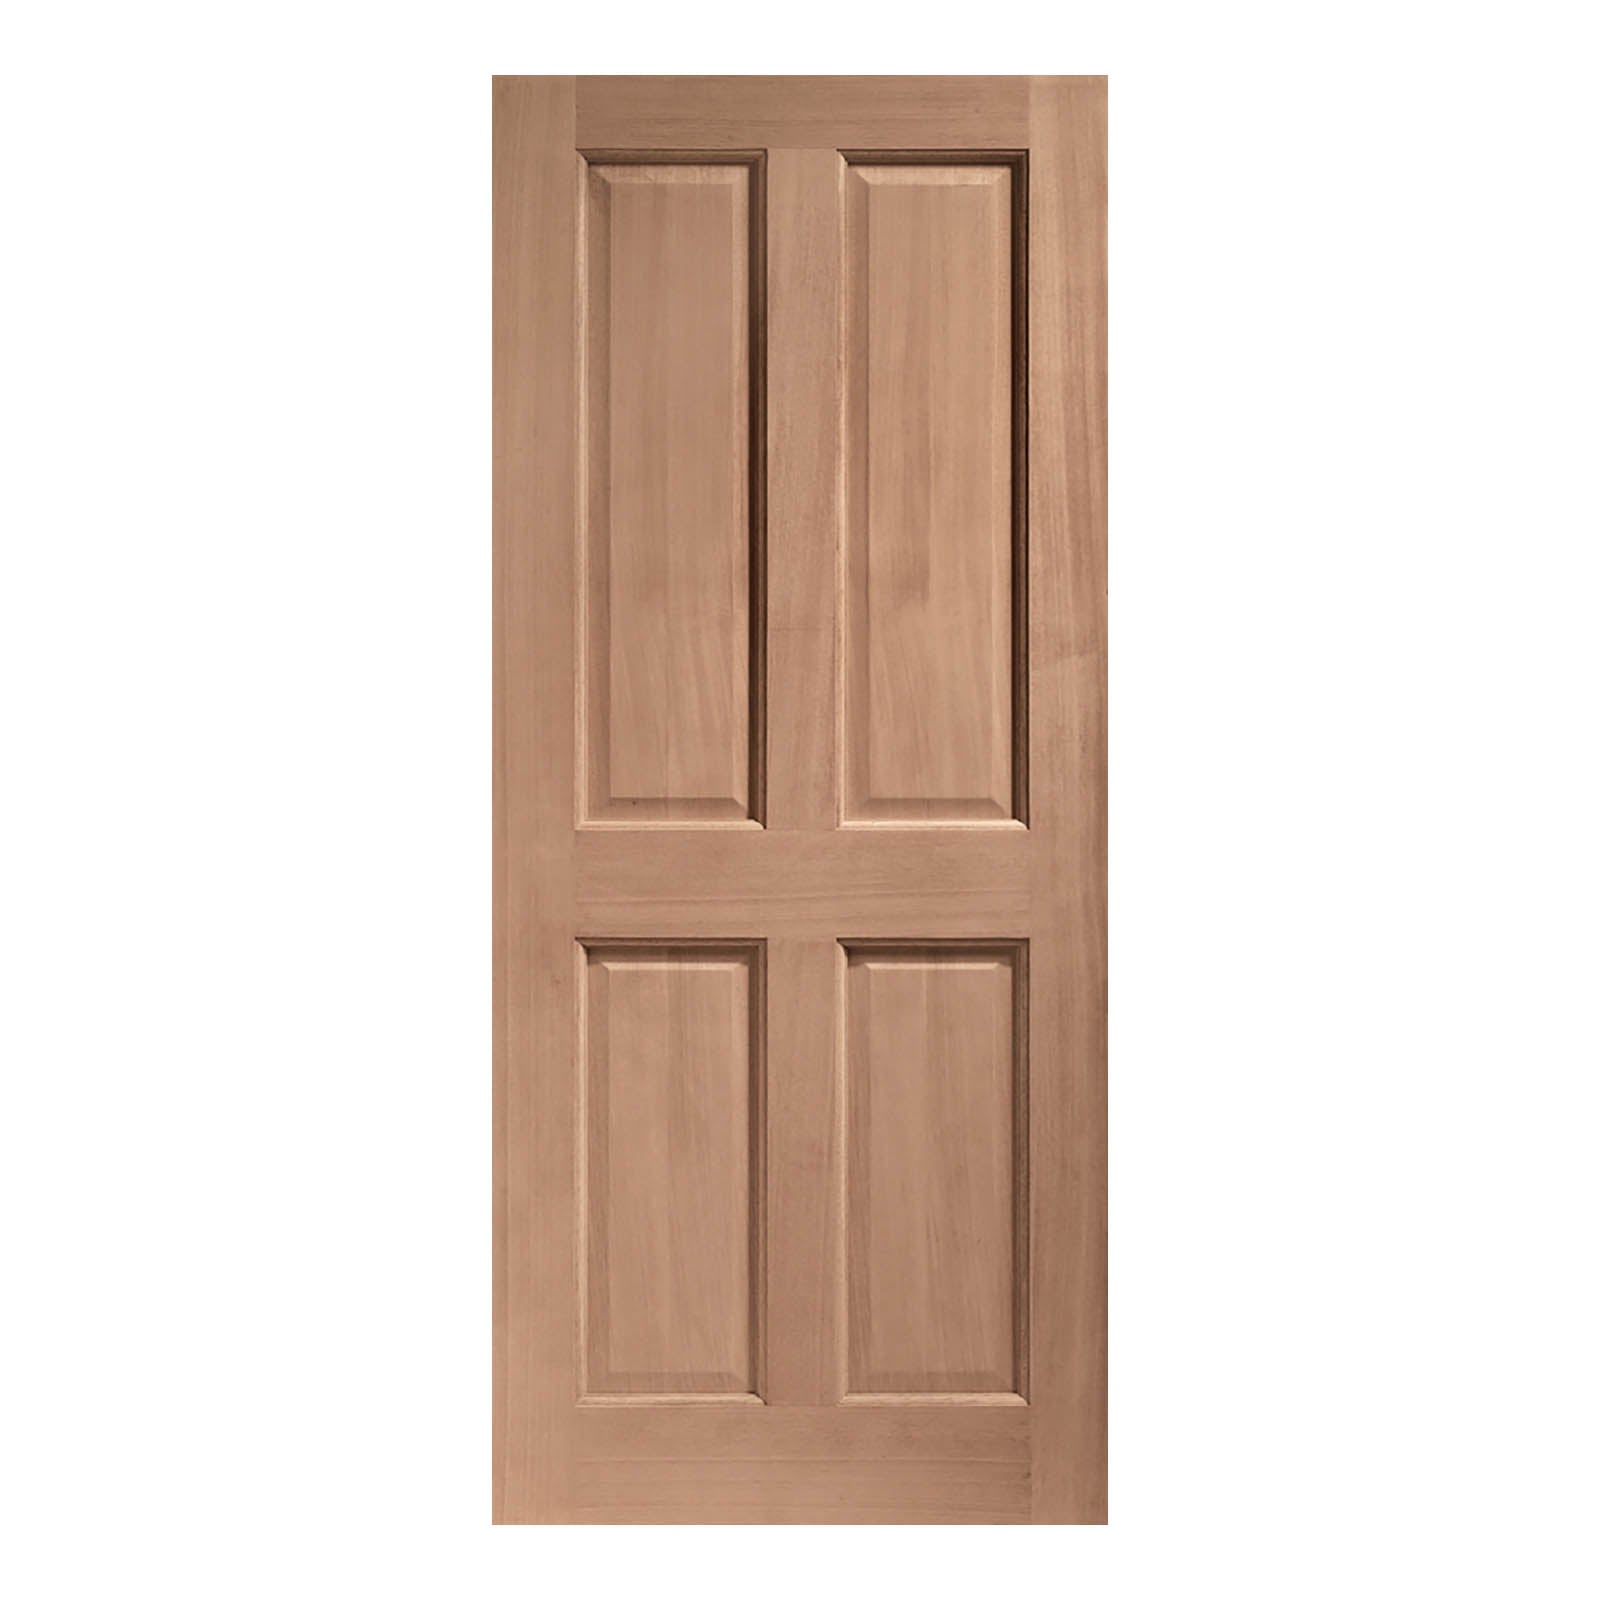 External Hardwood London 4 Panel Door